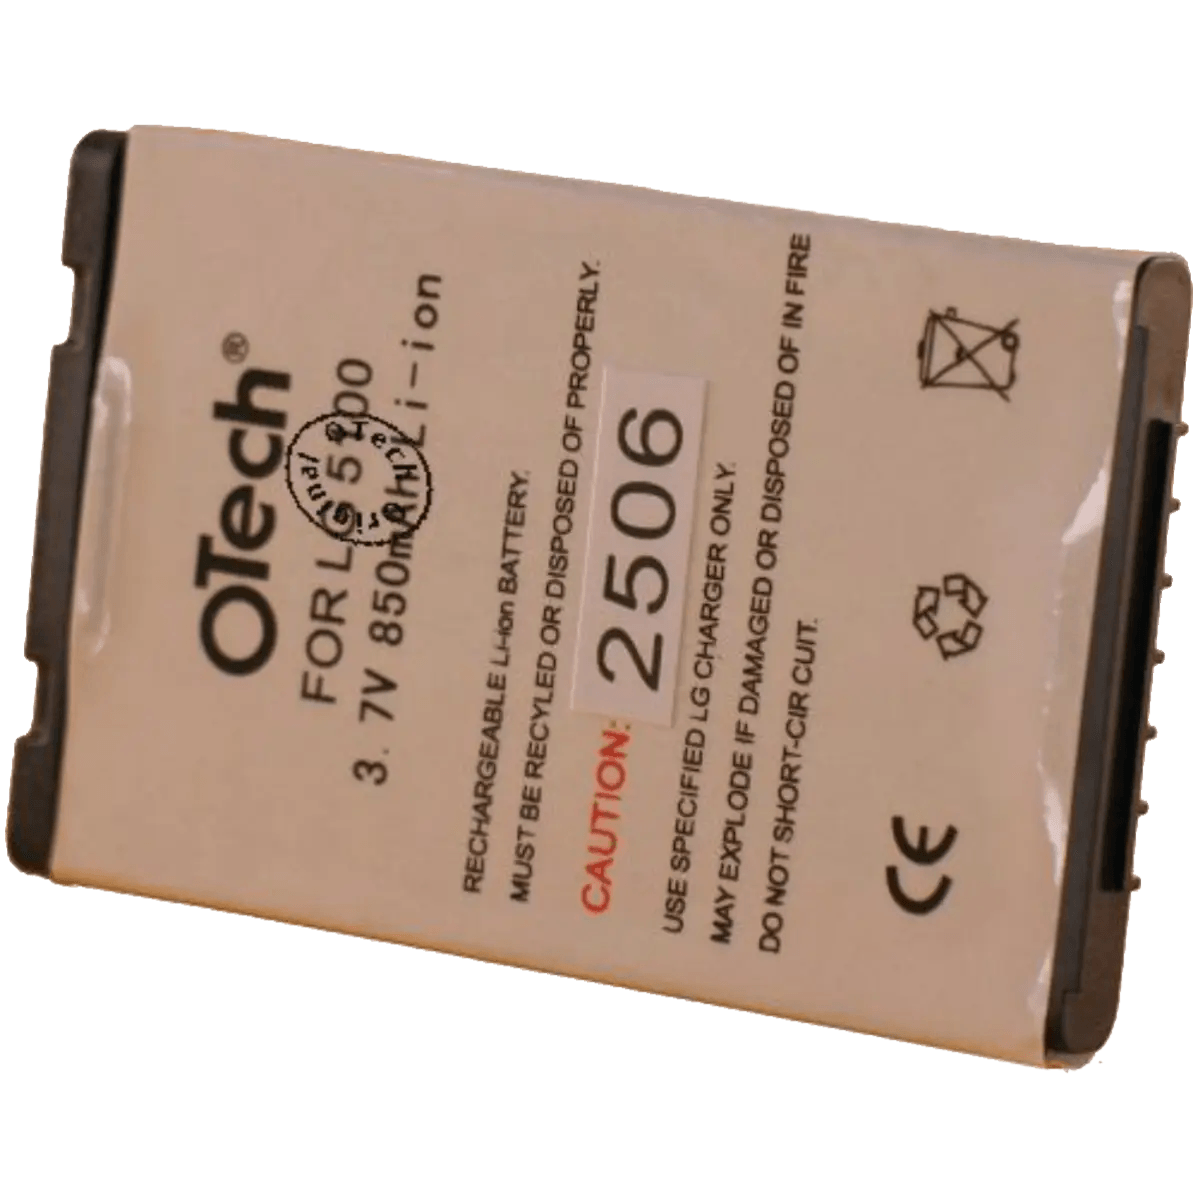 Batterie pour téléphone portable LG G1610, L5100, T5100